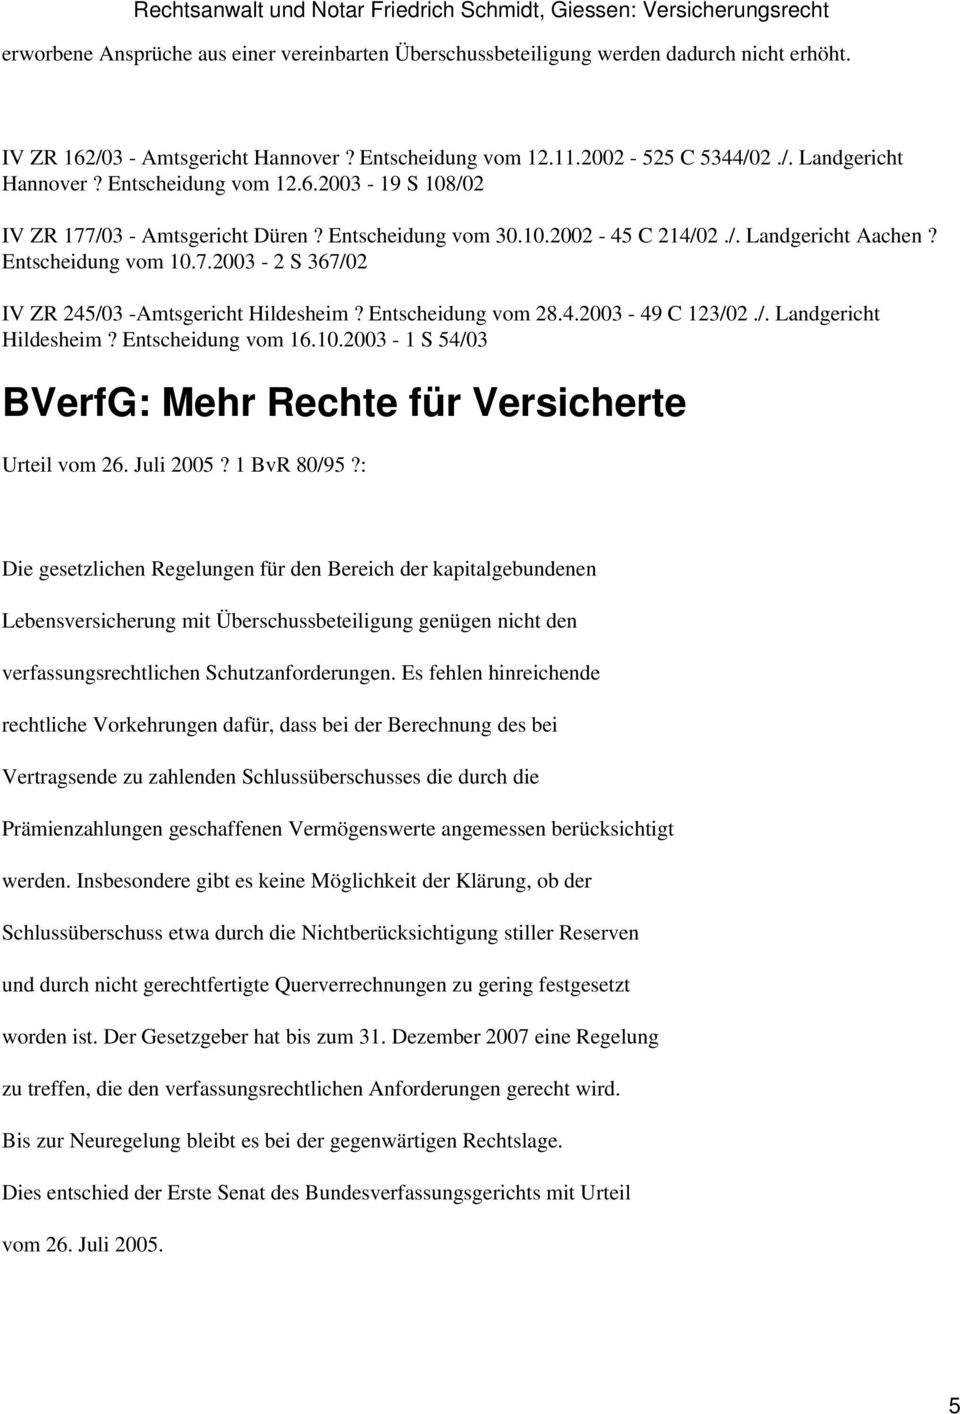 Entscheidung vom 28.4.2003-49 C 123/02./. Landgericht Hildesheim? Entscheidung vom 16.10.2003-1 S 54/03 BVerfG: Mehr Rechte für Versicherte Urteil vom 26. Juli 2005? 1 BvR 80/95?